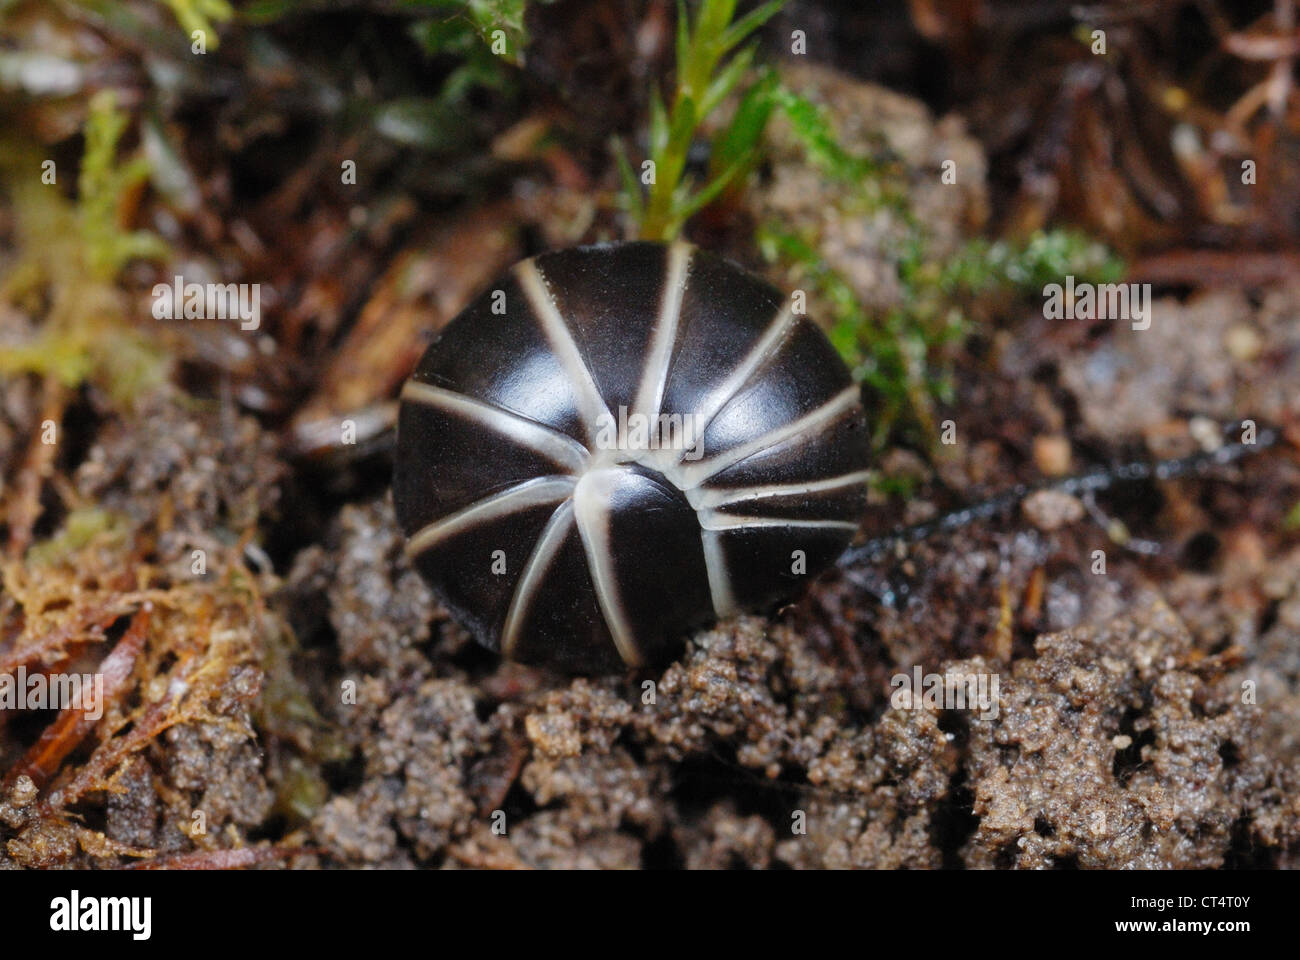 Common Pill Millipede (Glomeris marginata) curled into a defensive ball Stock Photo